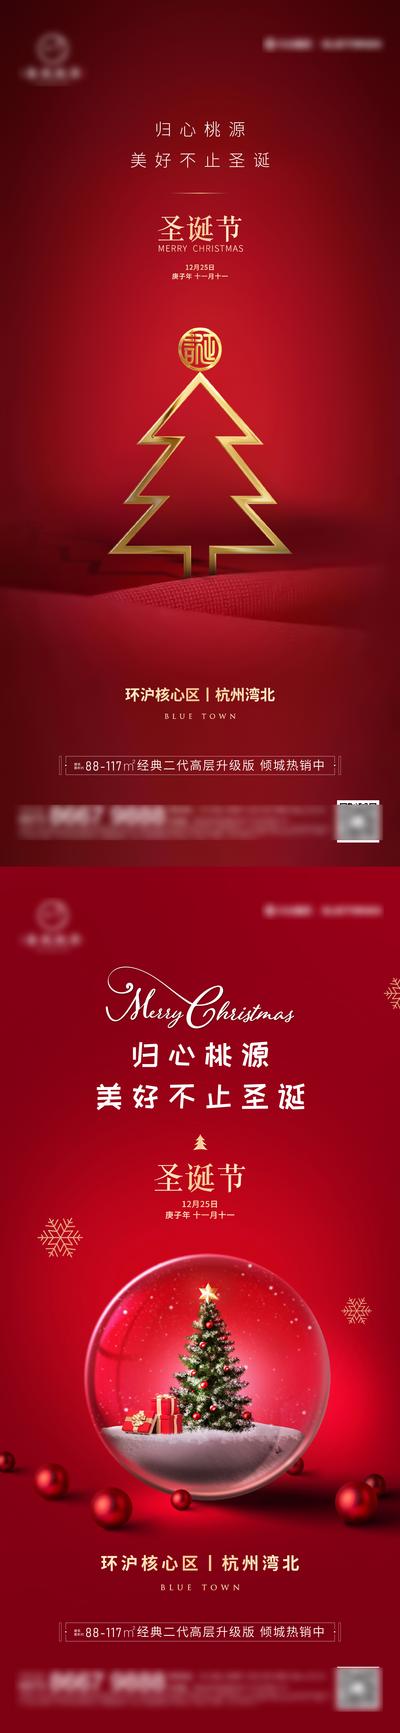 南门网 海报 地产 公历节日 西方节日 圣诞节 红金 圣诞树 简约 精致 系列